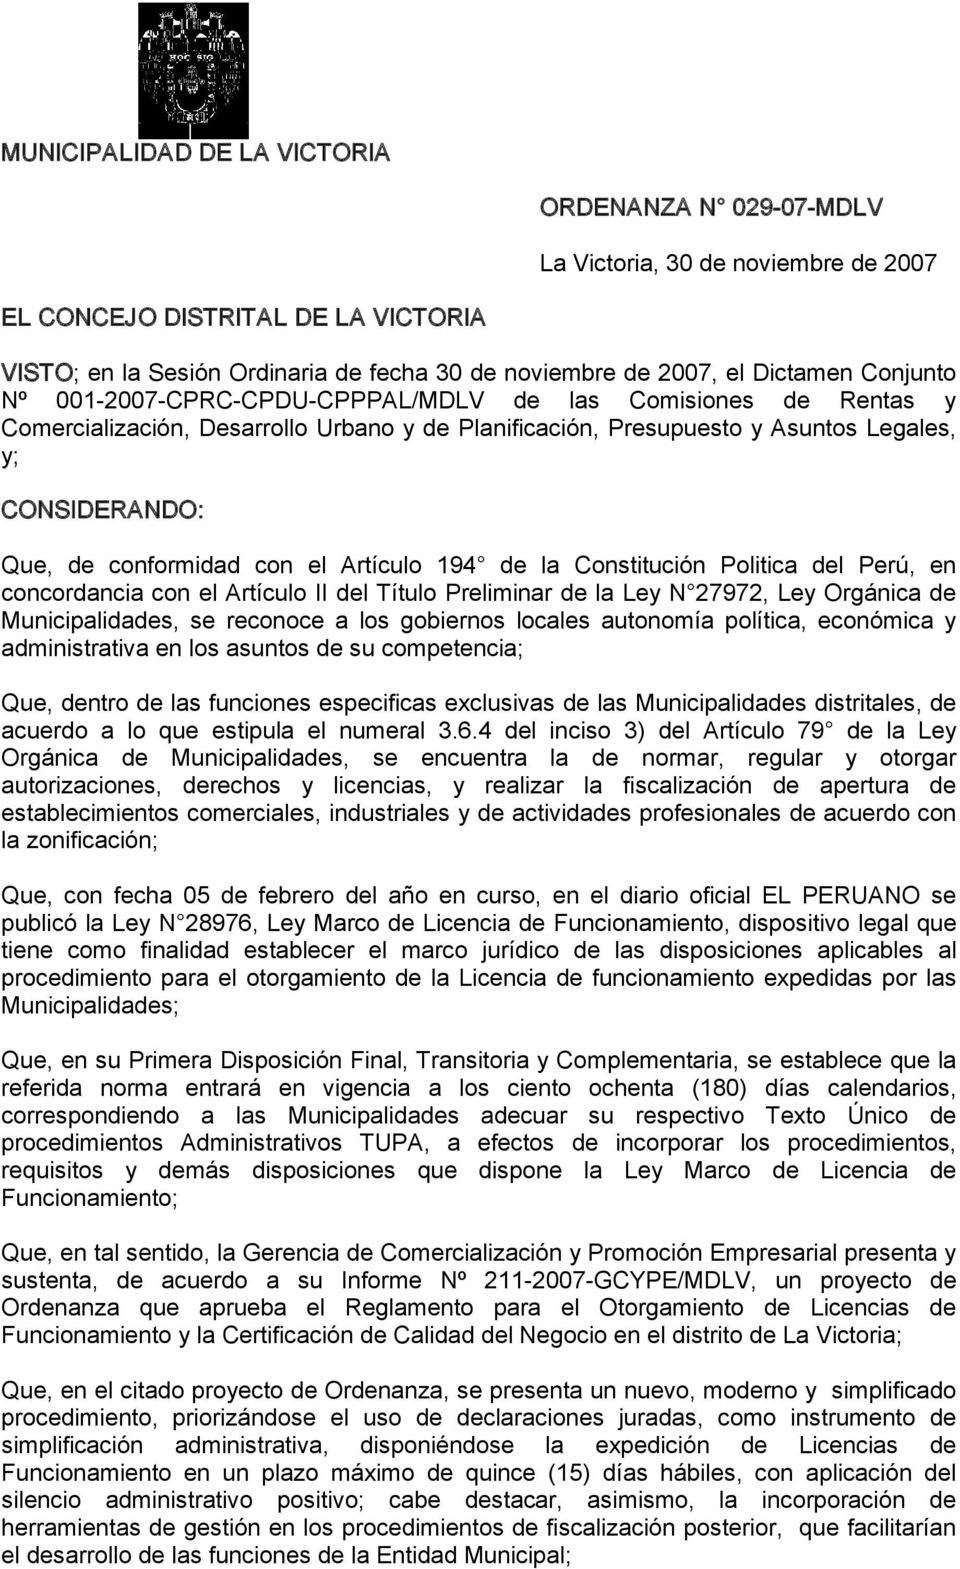 conformidad con el Artículo 194 de la Constitución Politica del Perú, en concordancia con el Artículo II del Título Preliminar de la Ley N 27972, Ley Orgánica de Municipalidades, se reconoce a los